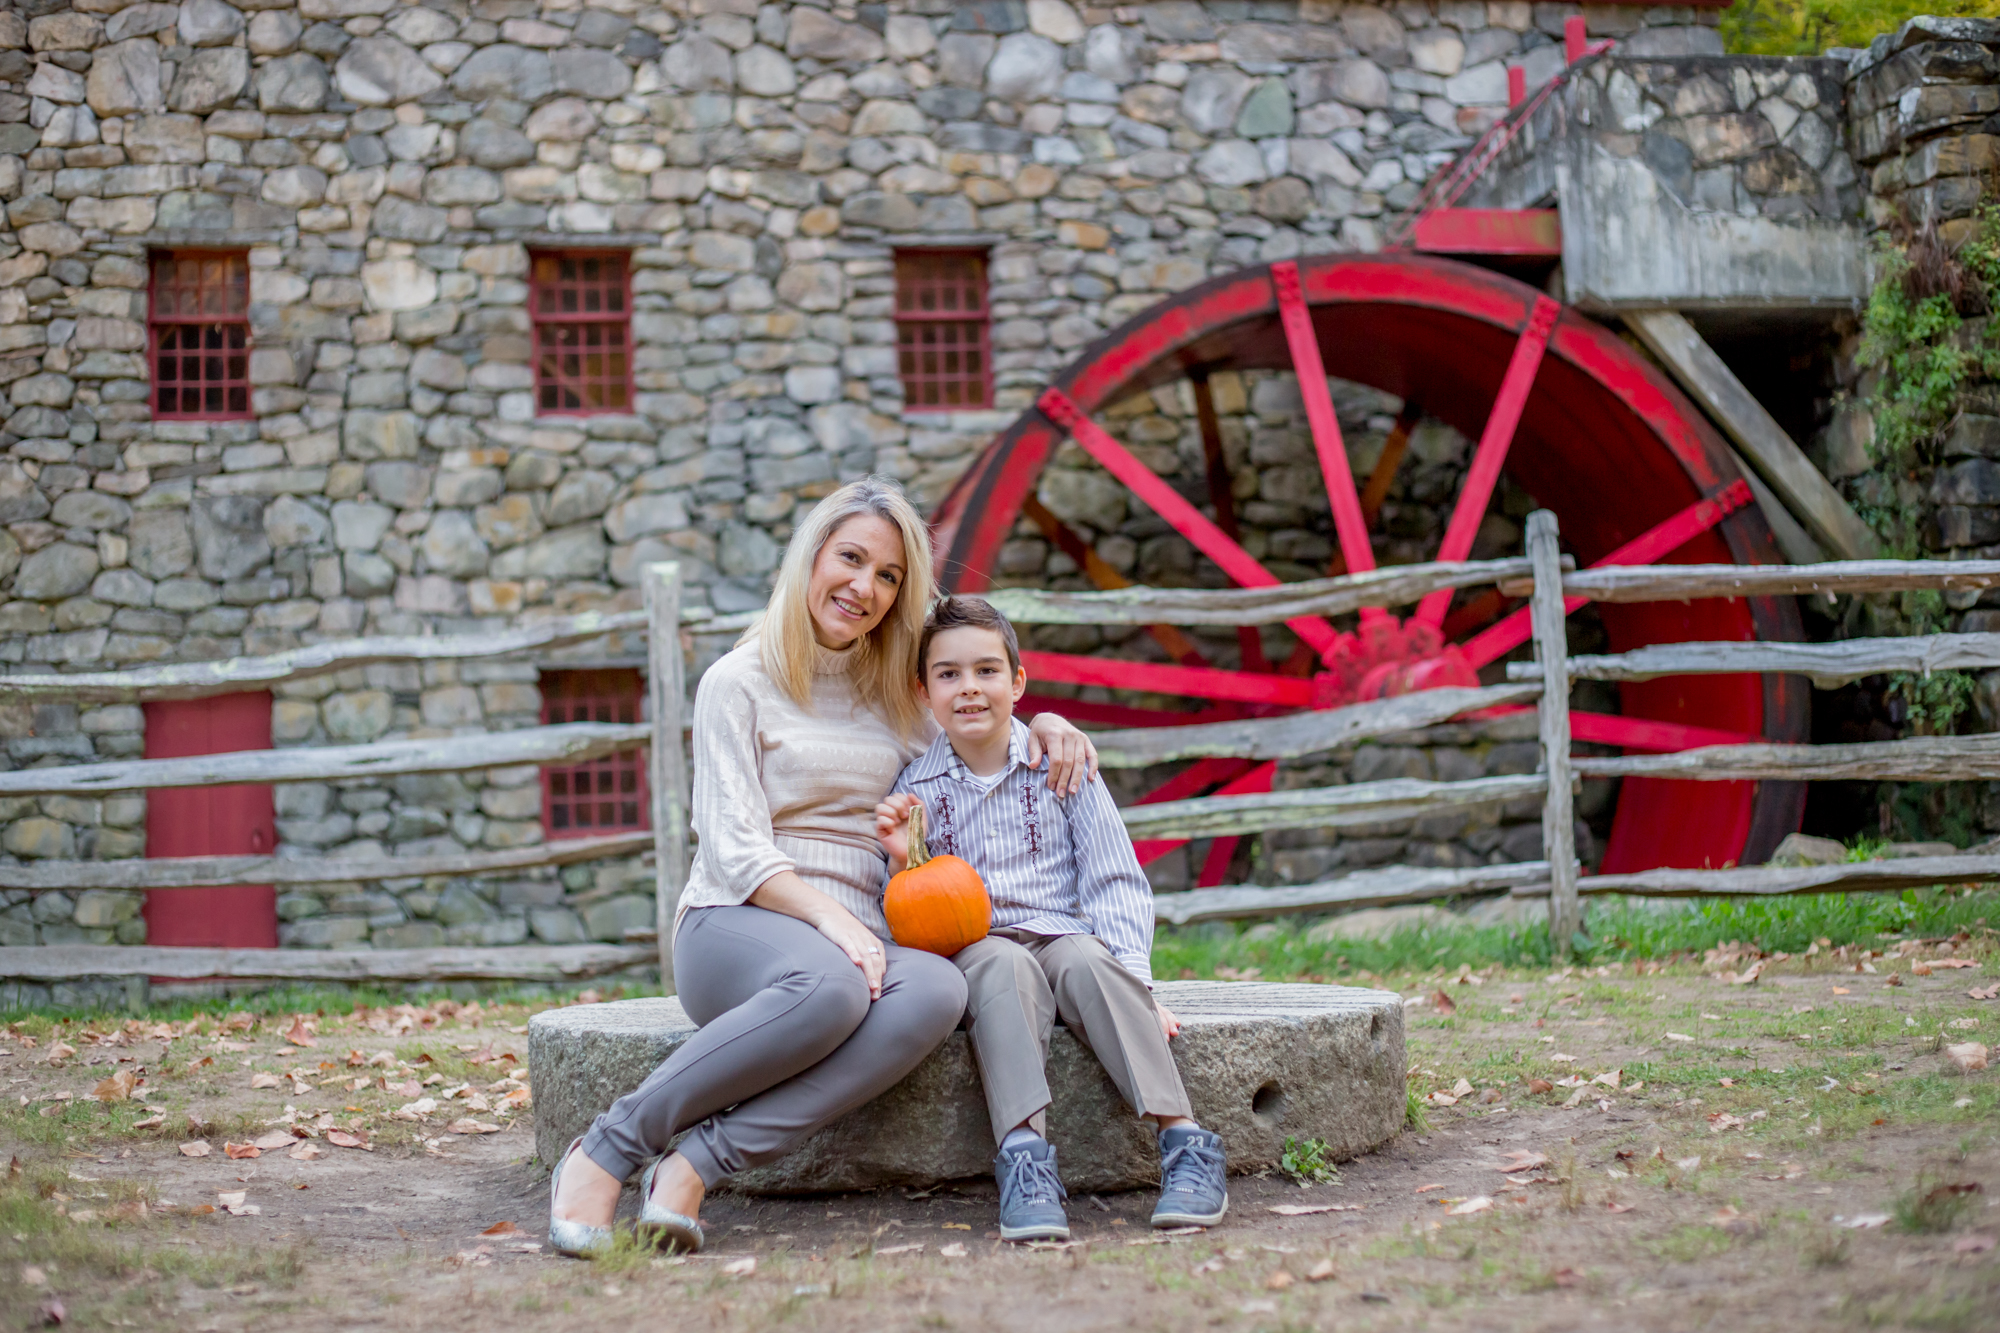 Sudbury MA Grist mill erica pezente fall family photo